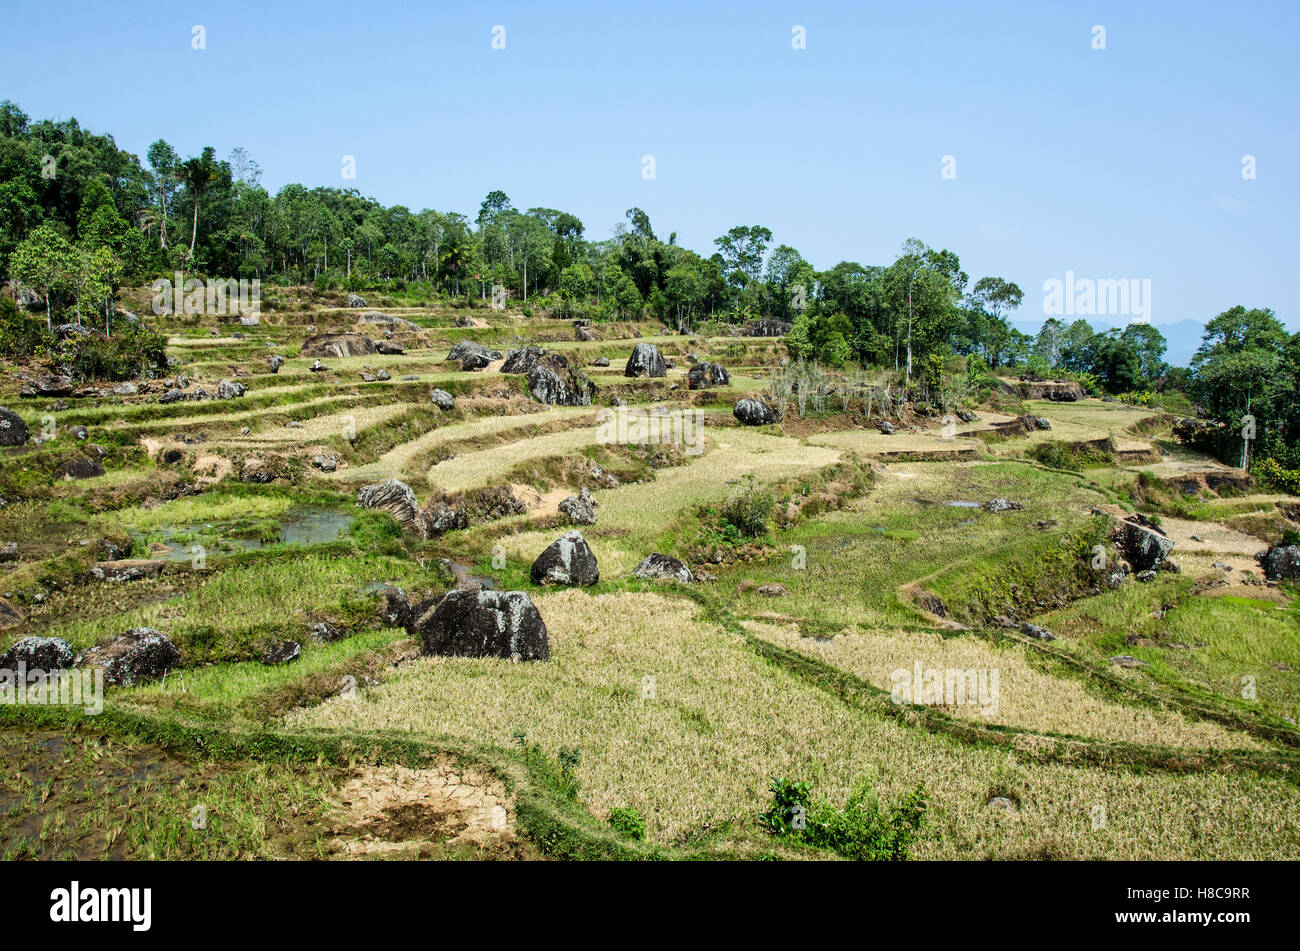 Landscape of Batutumonga, South Sulawesi Stock Photo